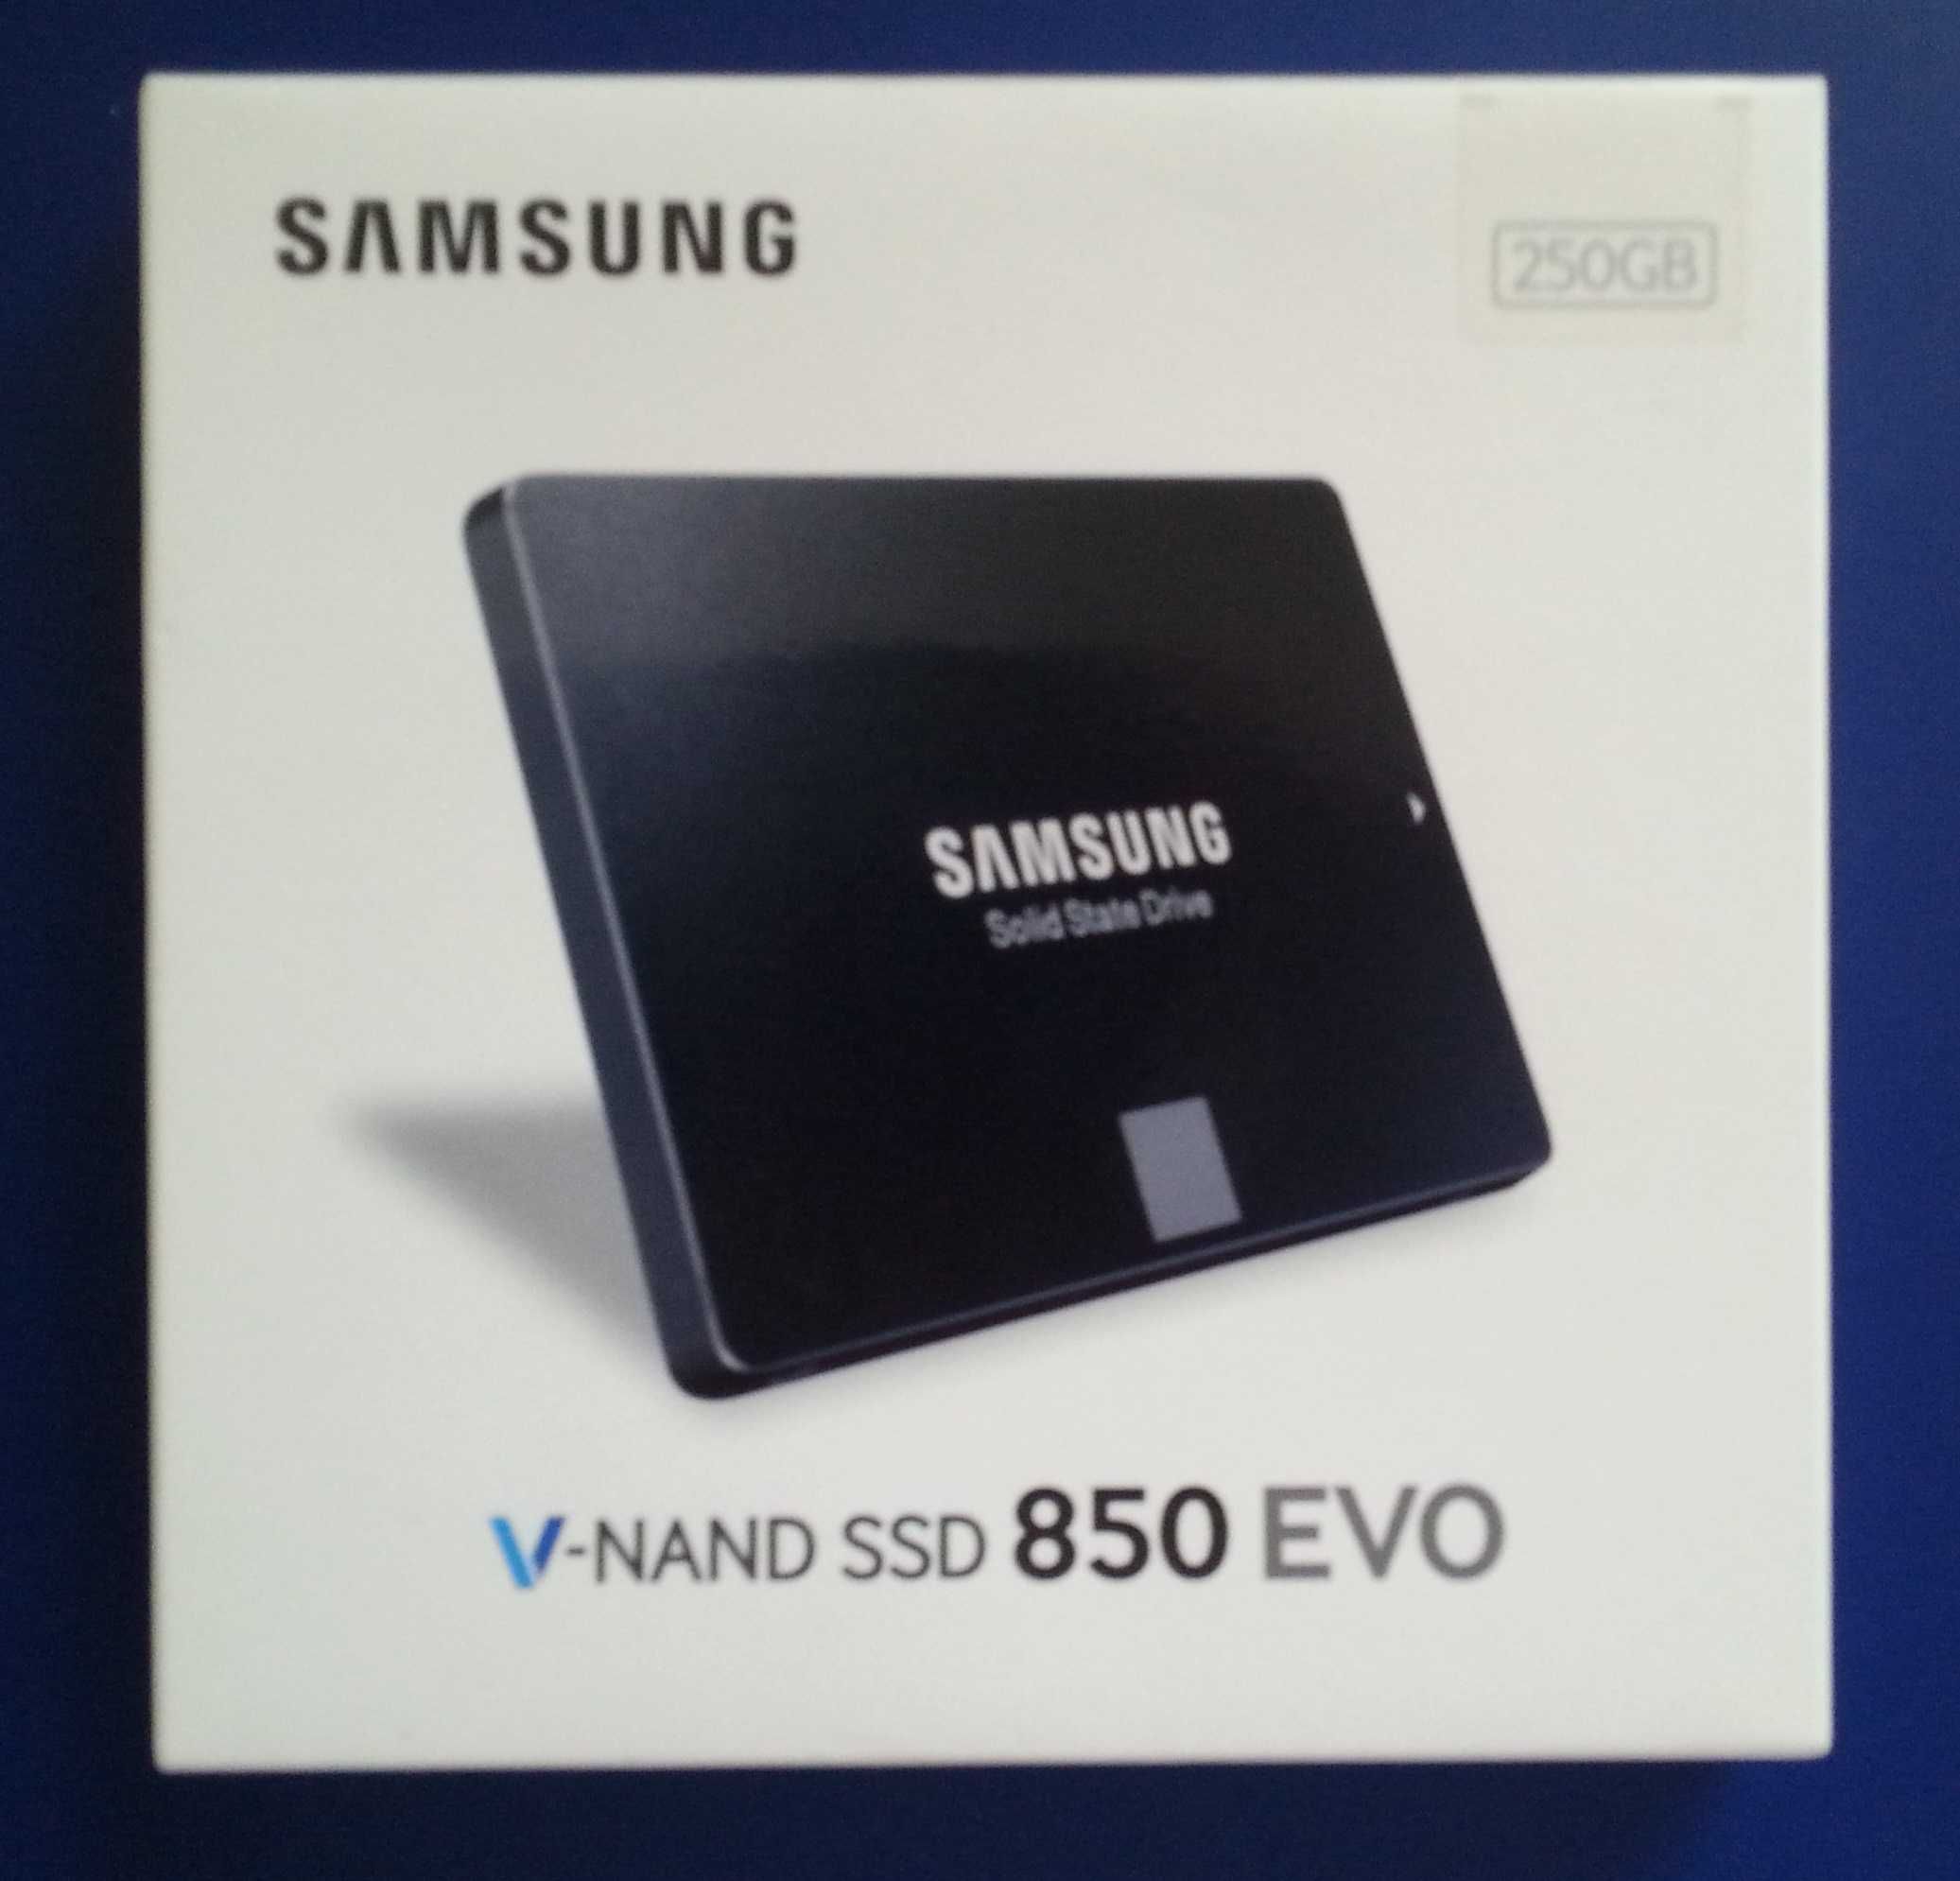 Nowy,zapakowany gw.Samsung 860 evo-4 TB-dysk ssd.Polecam inne modele.